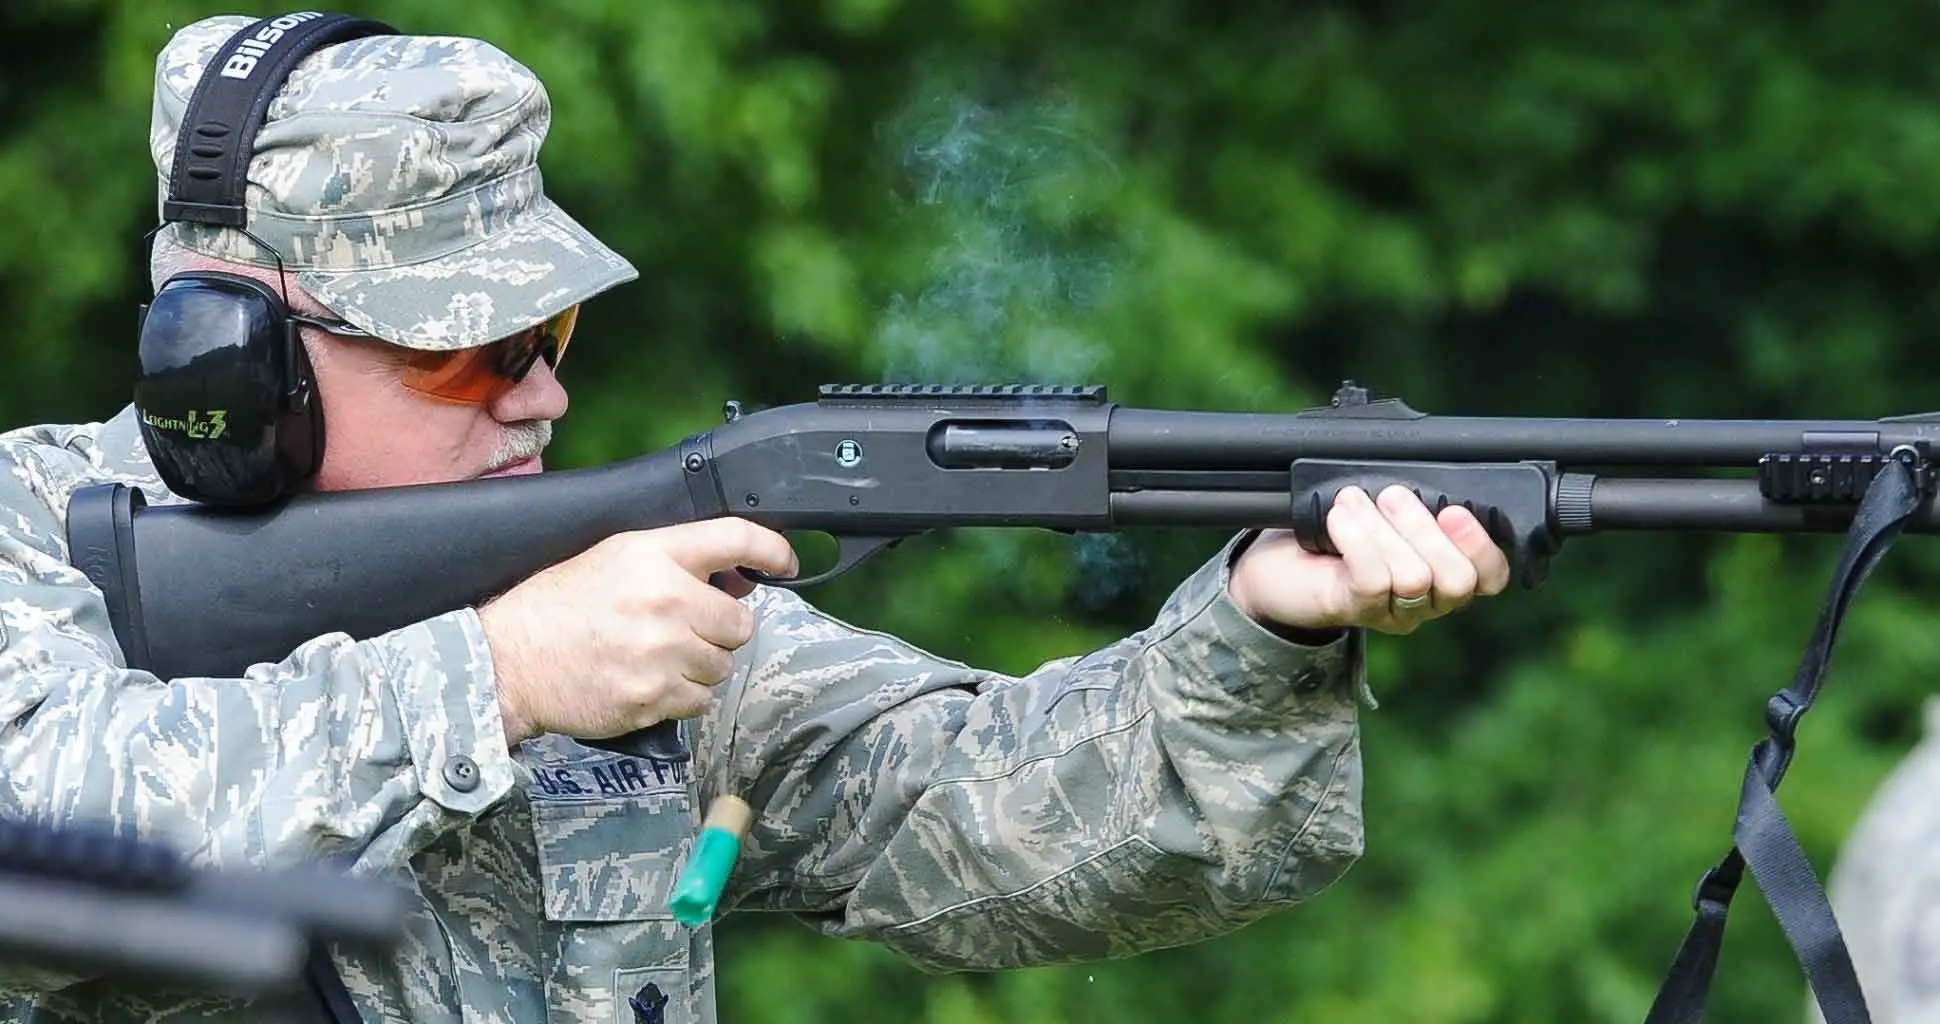 The Pistol Grip Shotgun Explained